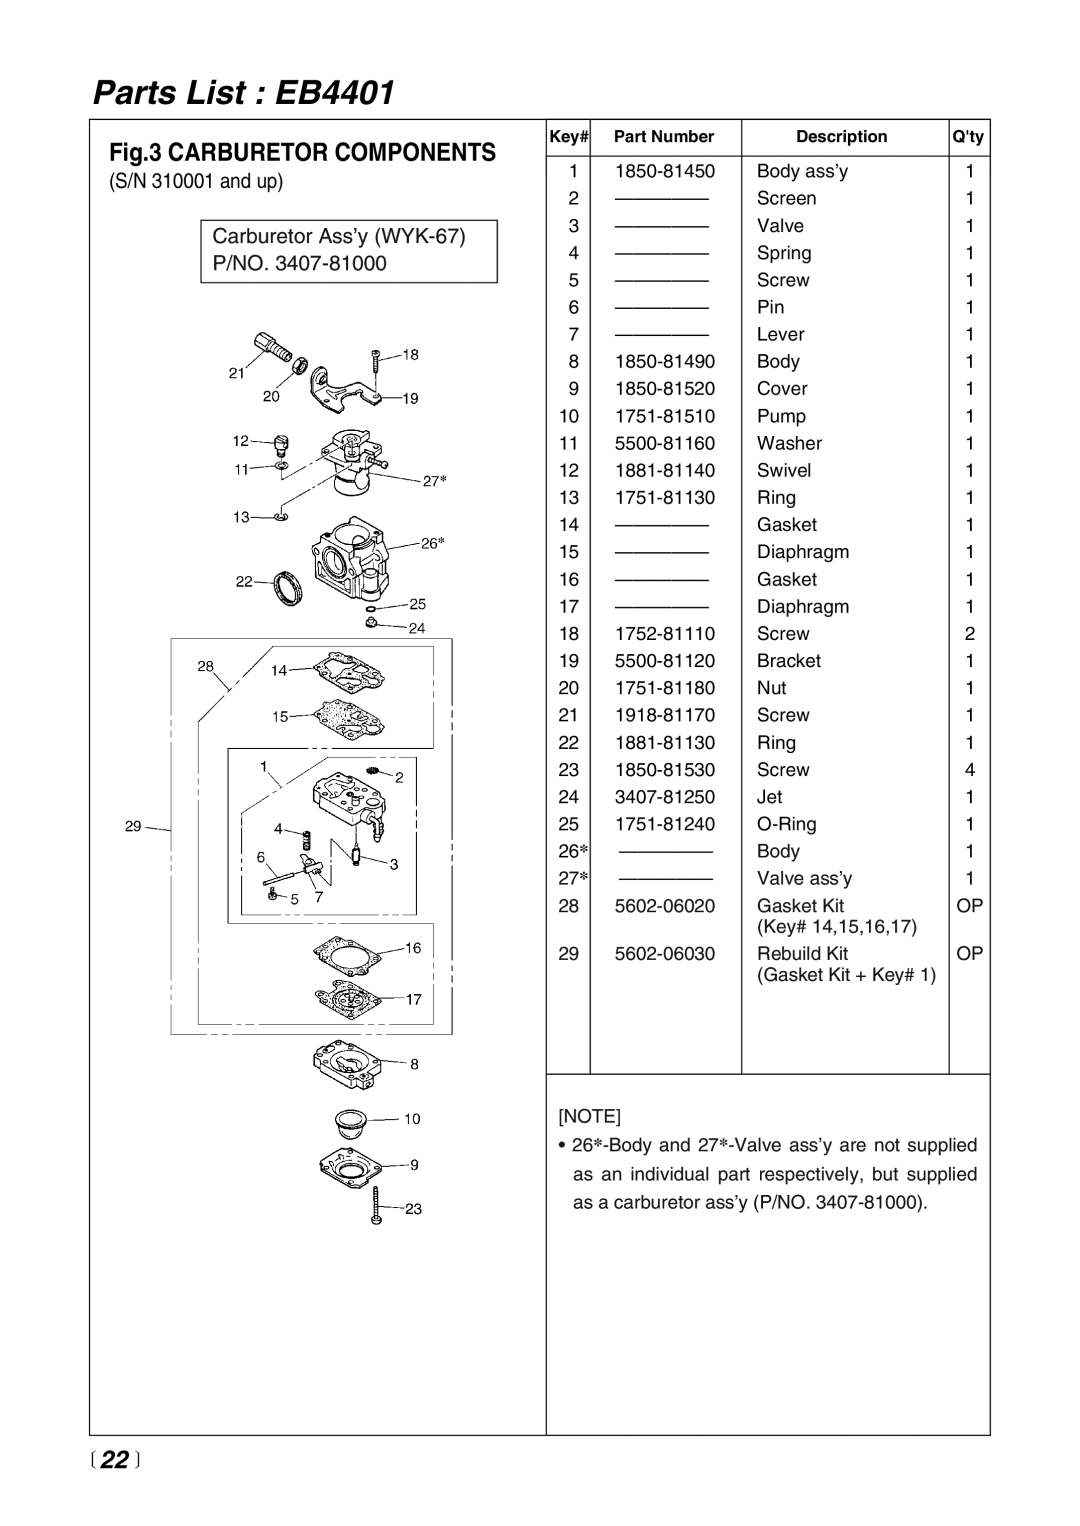 RedMax manual Parts List EB4401, Carburetor Components, 22  